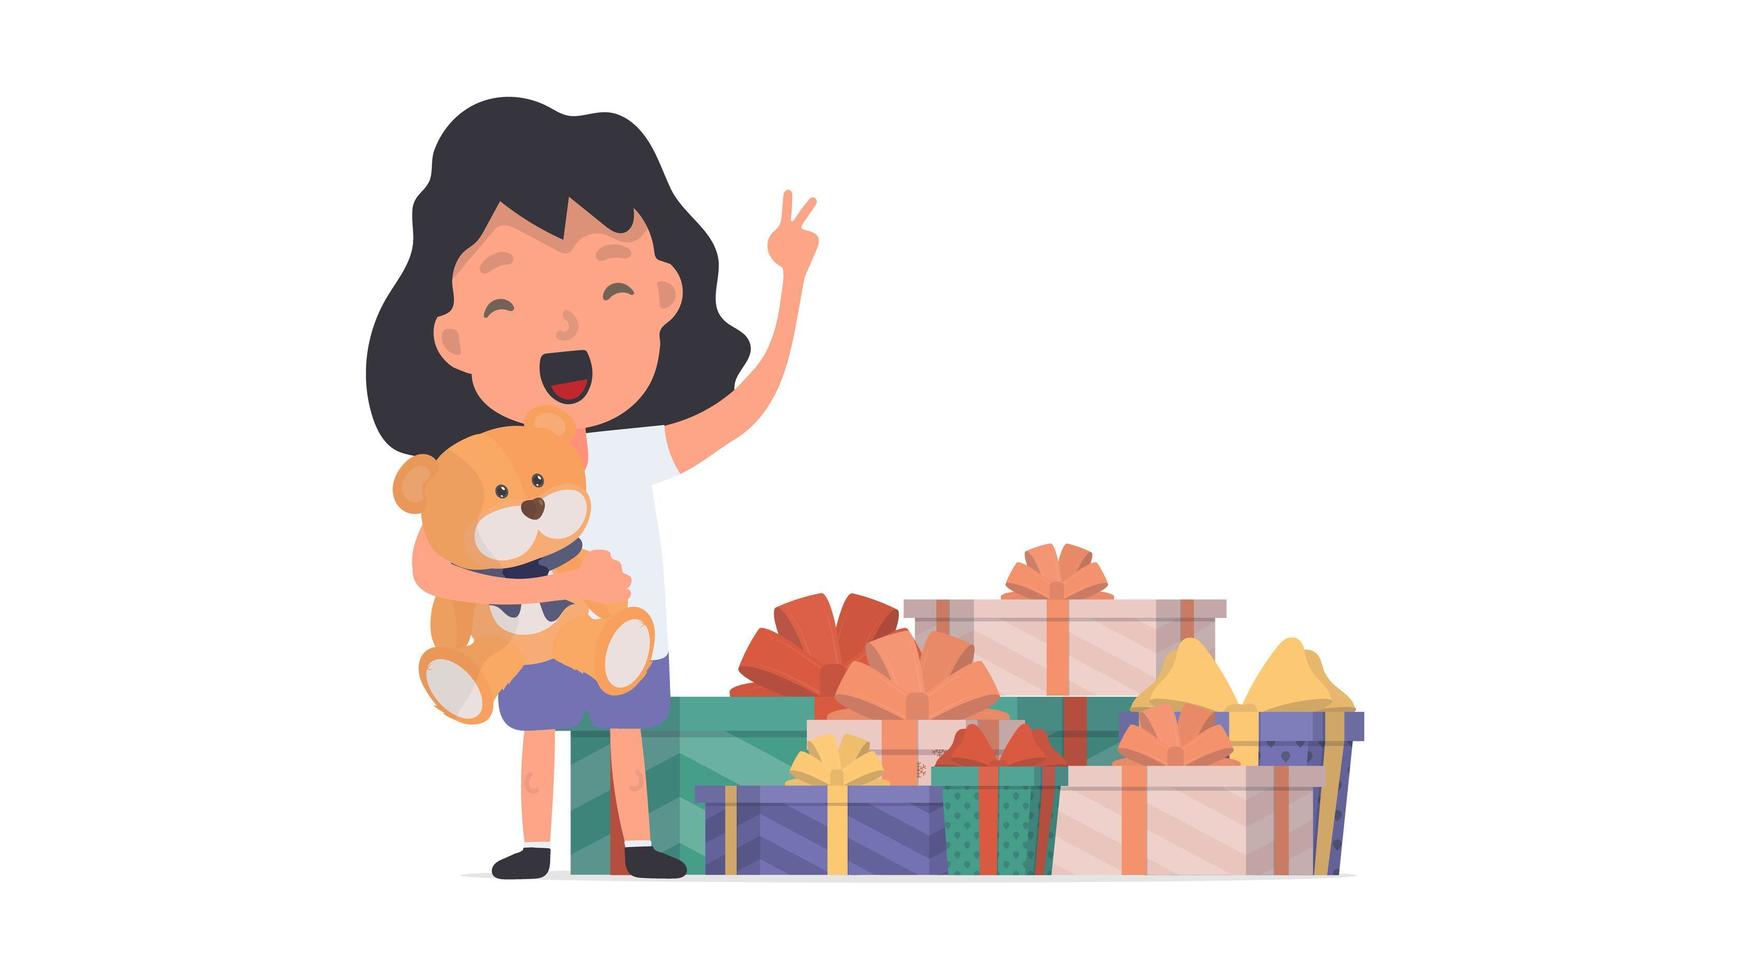 ein glückliches Mädchen mit einem Teddybären und vielen Geschenken. glückliches Kind mit Geschenken. isoliert. Vektor. vektor